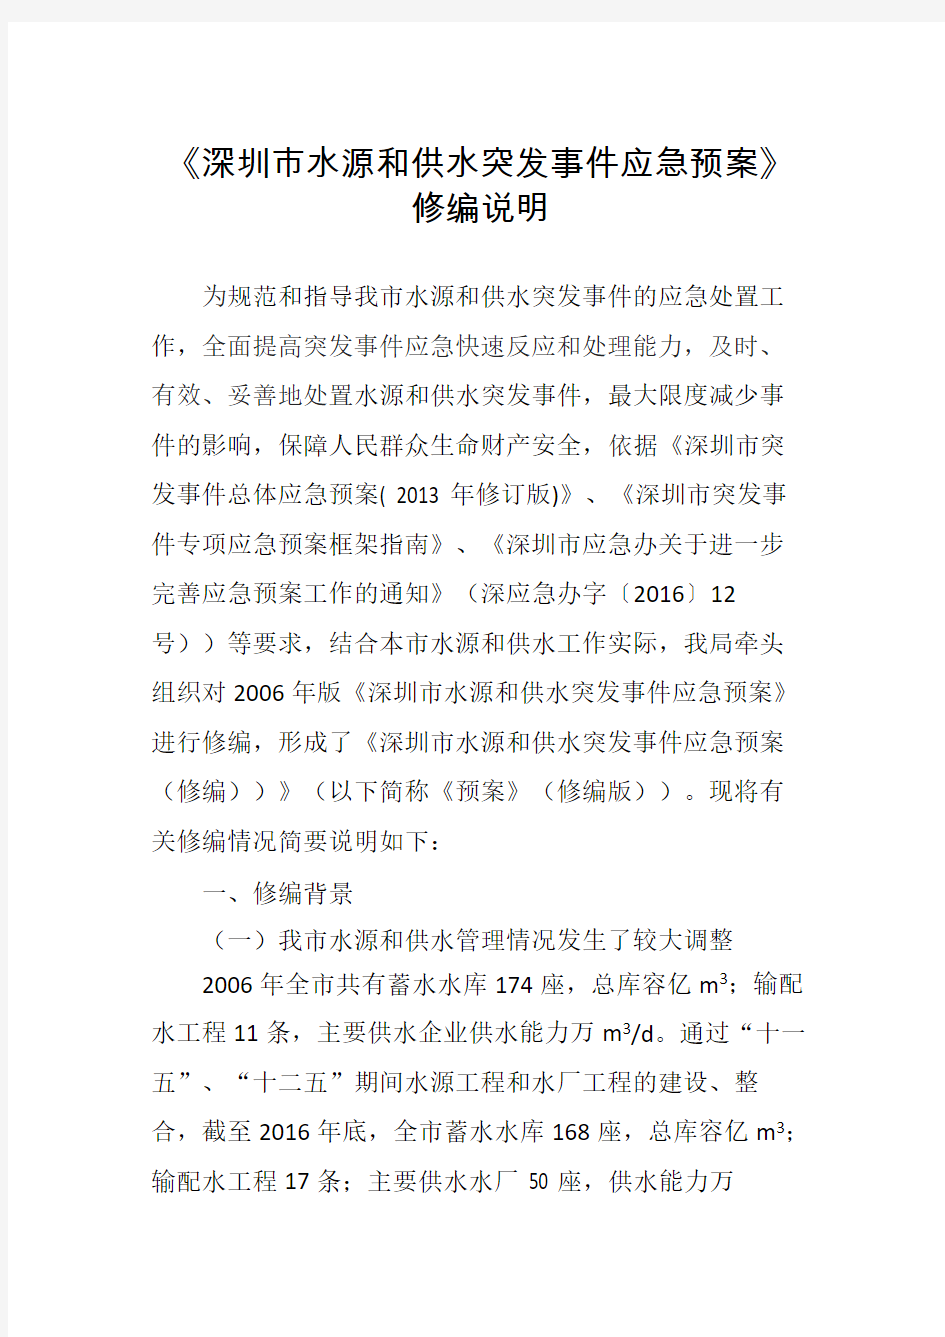 深圳市水源和供水突发事件应急预案(送审稿)编制说明